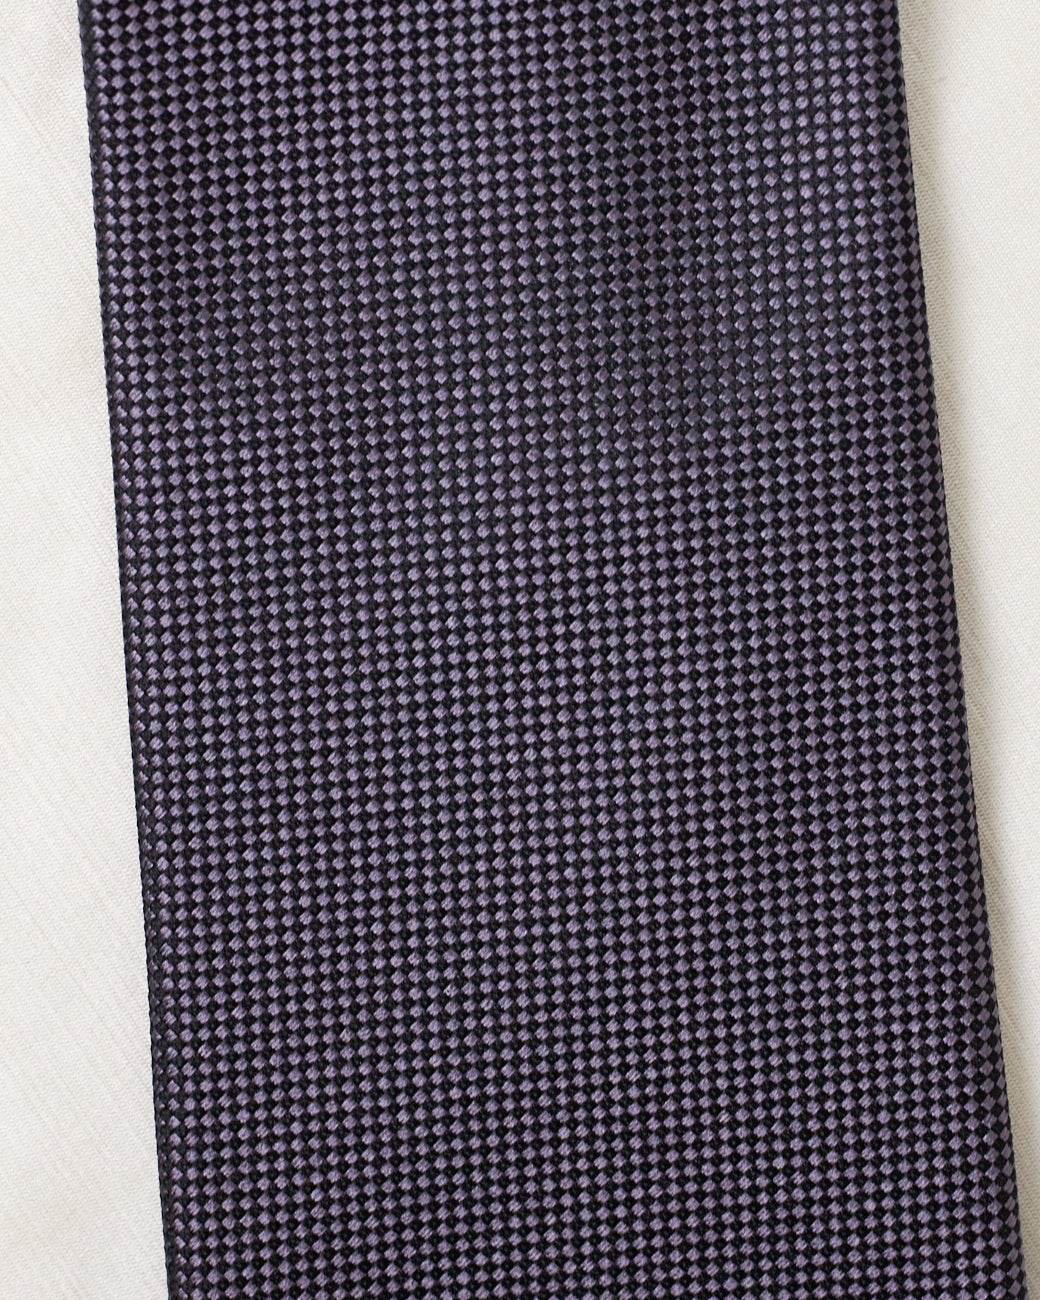 Cravate noire violette Gucci